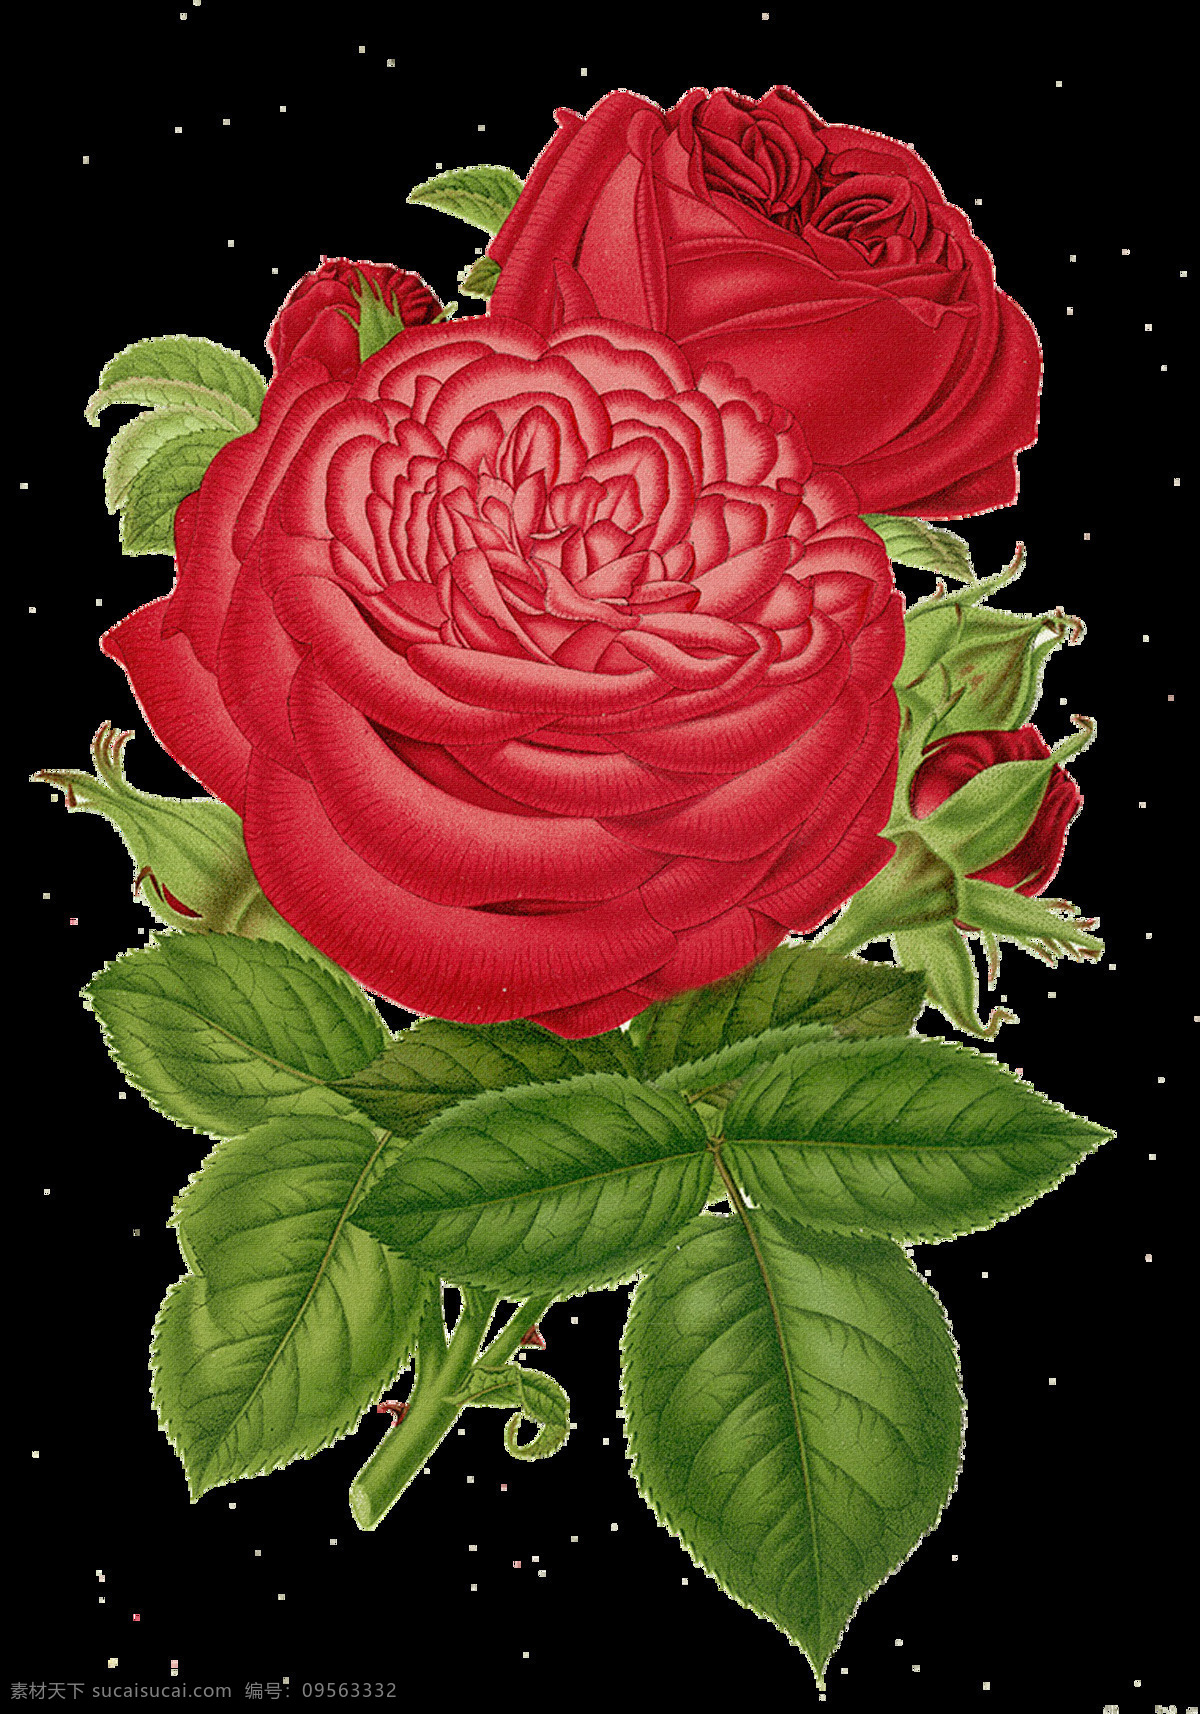 红色玫瑰花 红色 玫瑰花 设计素材 模板下载 手绘玫瑰花 手绘 手绘花朵 复古玫瑰花 复古花朵 静物花卉 月季花 绘画花朵 玫瑰 绘画书法 文化艺术 花朵素材